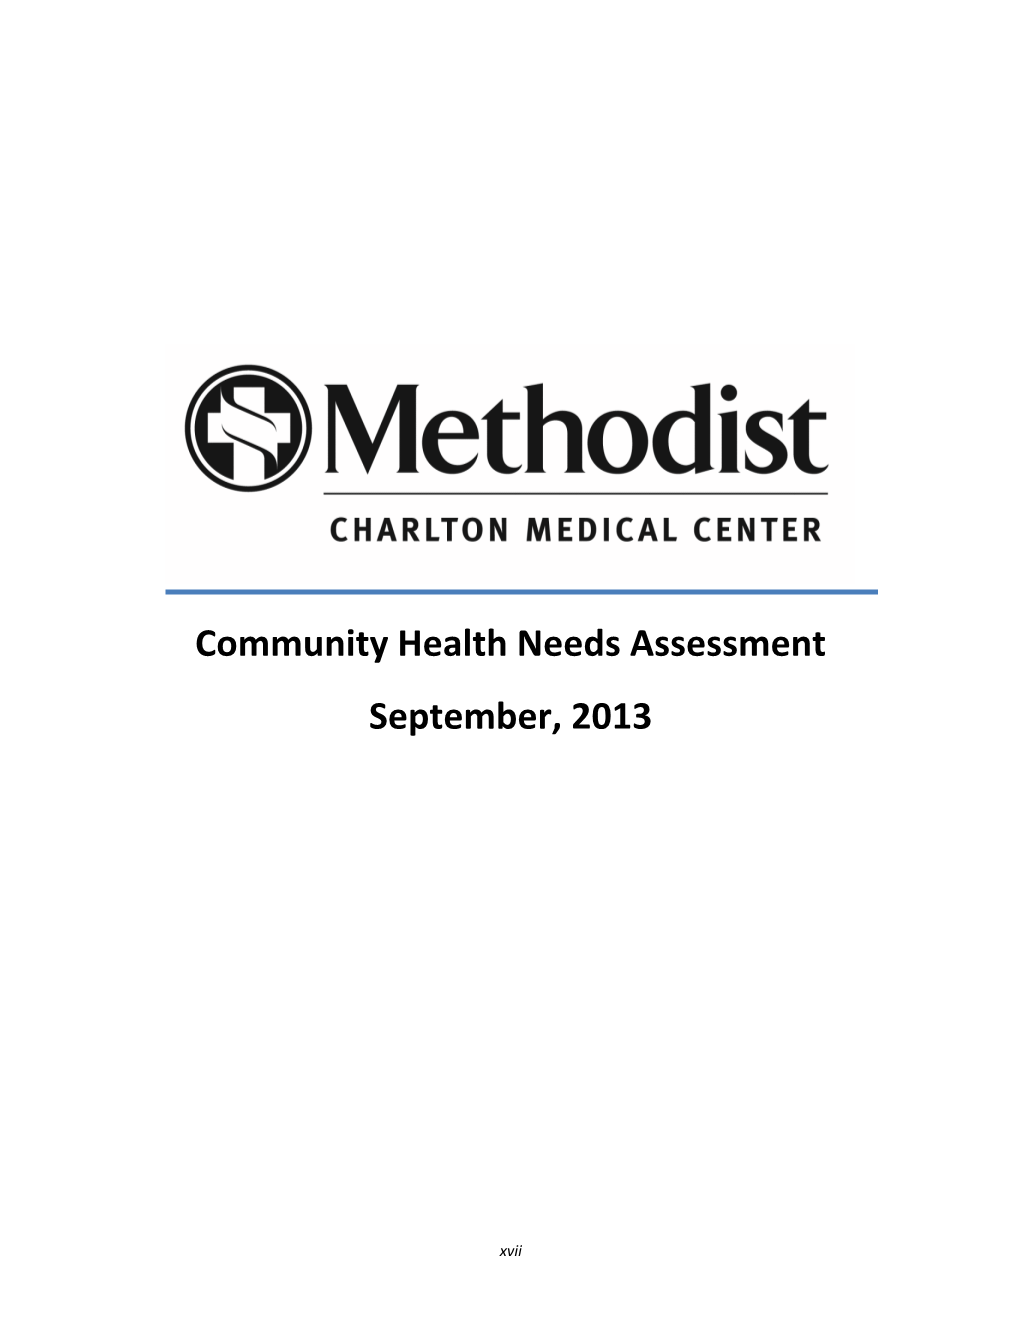 Community Health Needs Assessment September, 2013